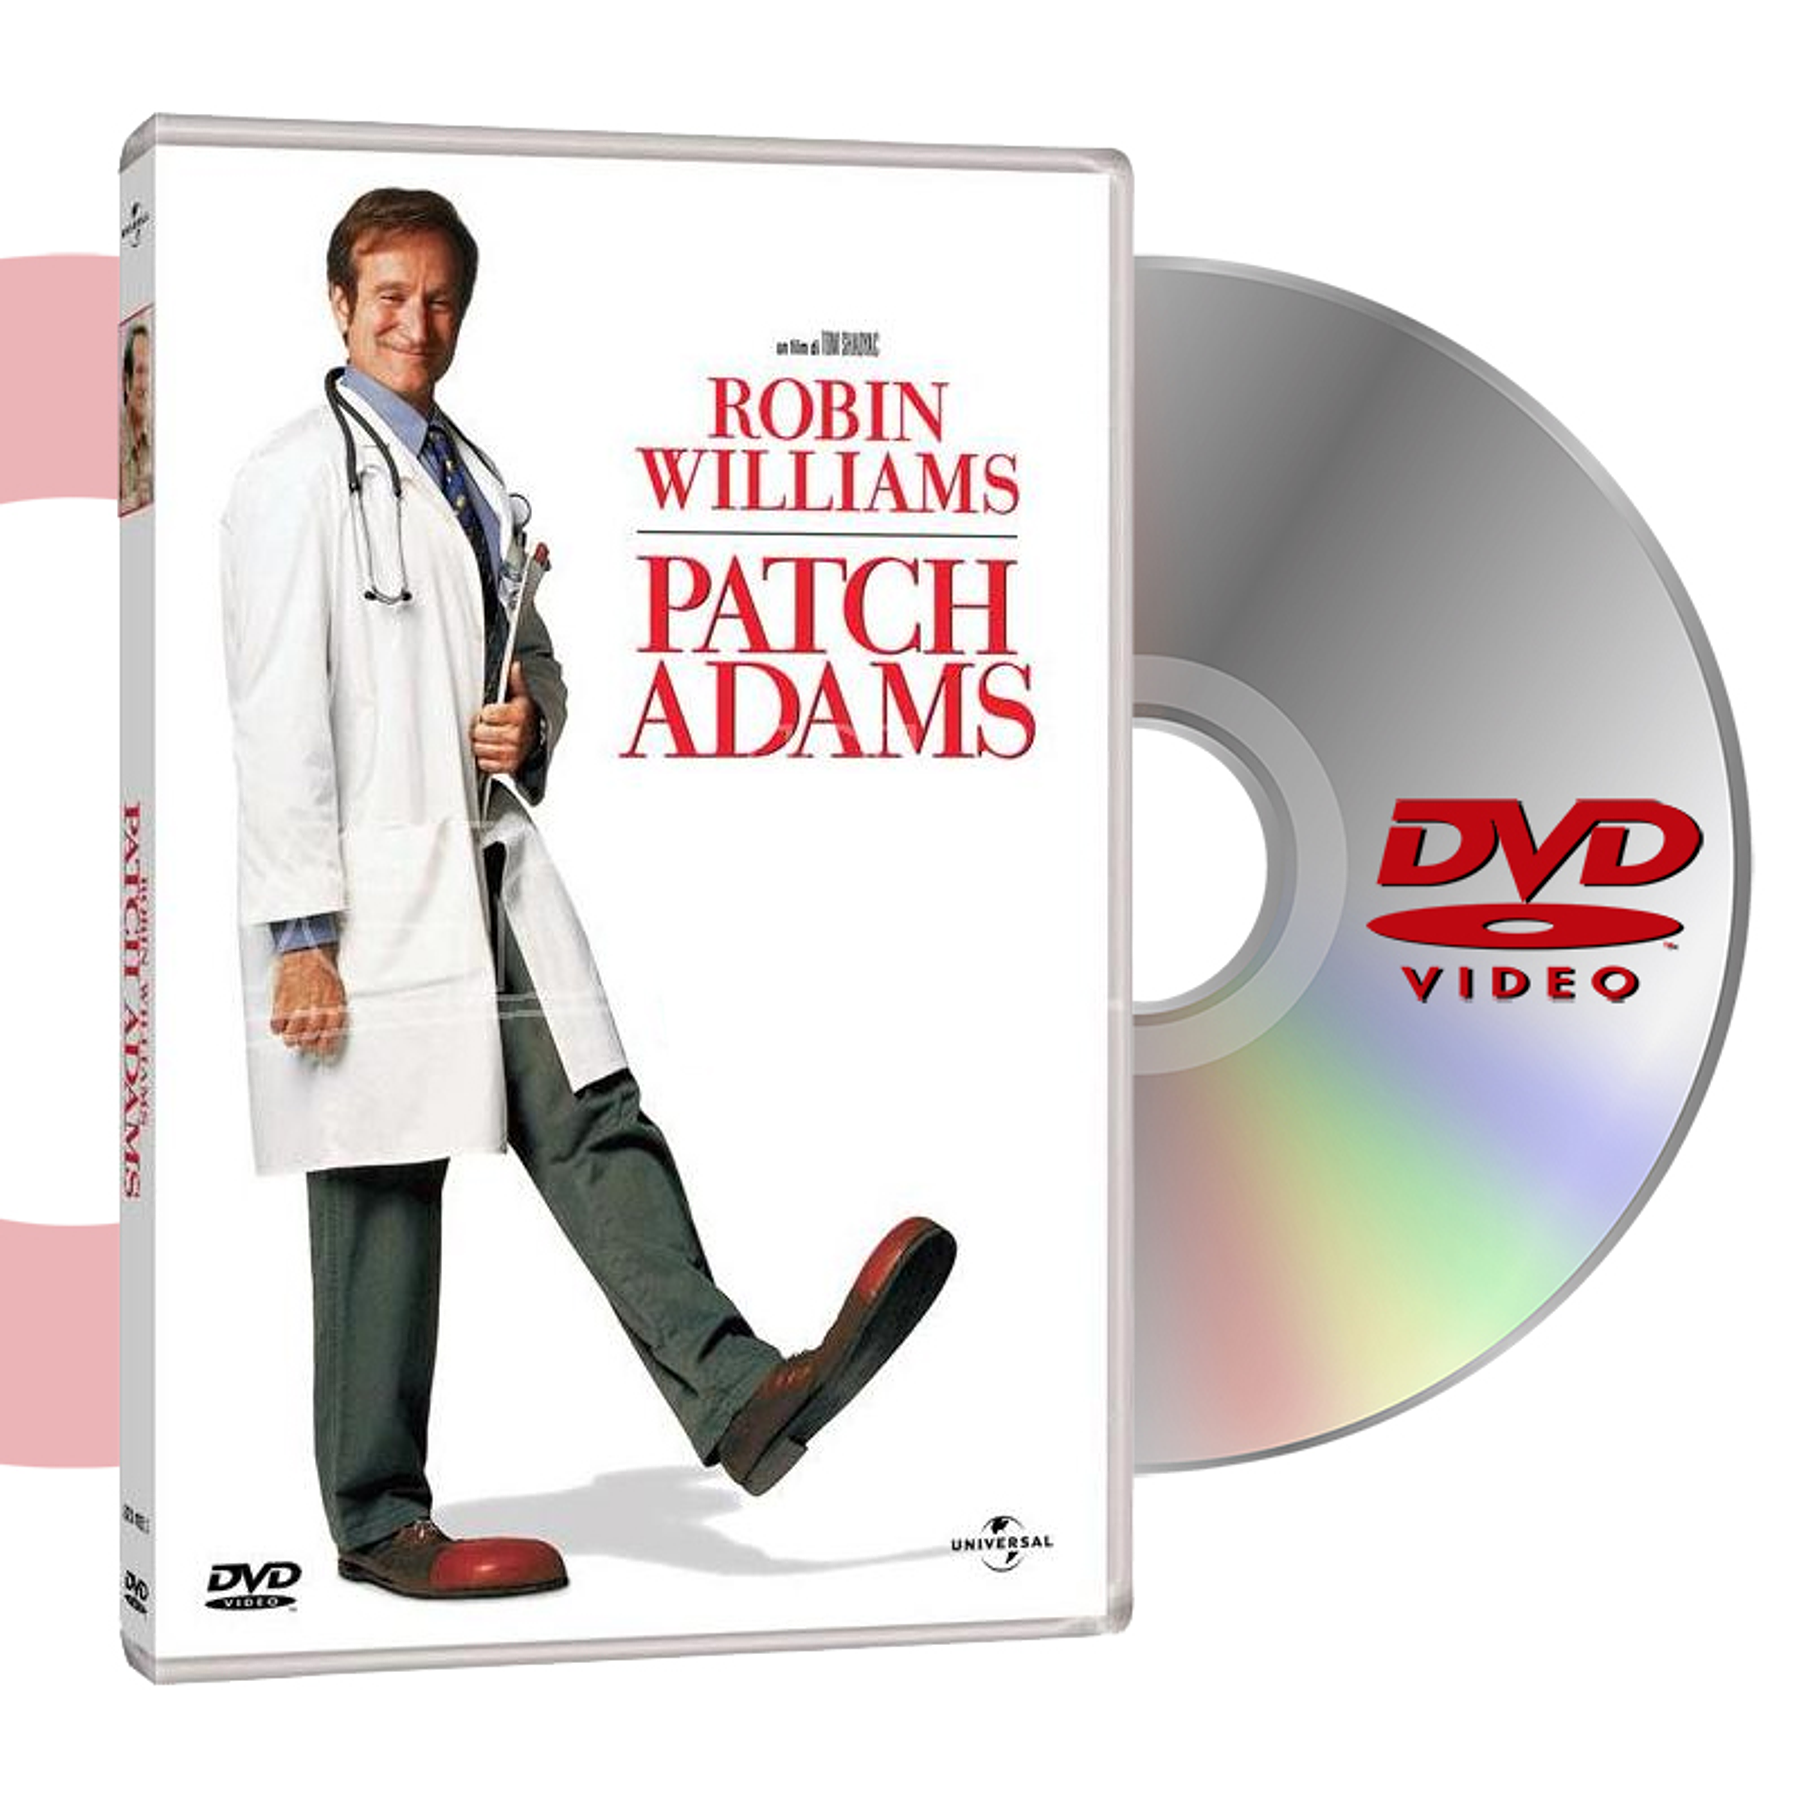 DVD PATCH ADAMS